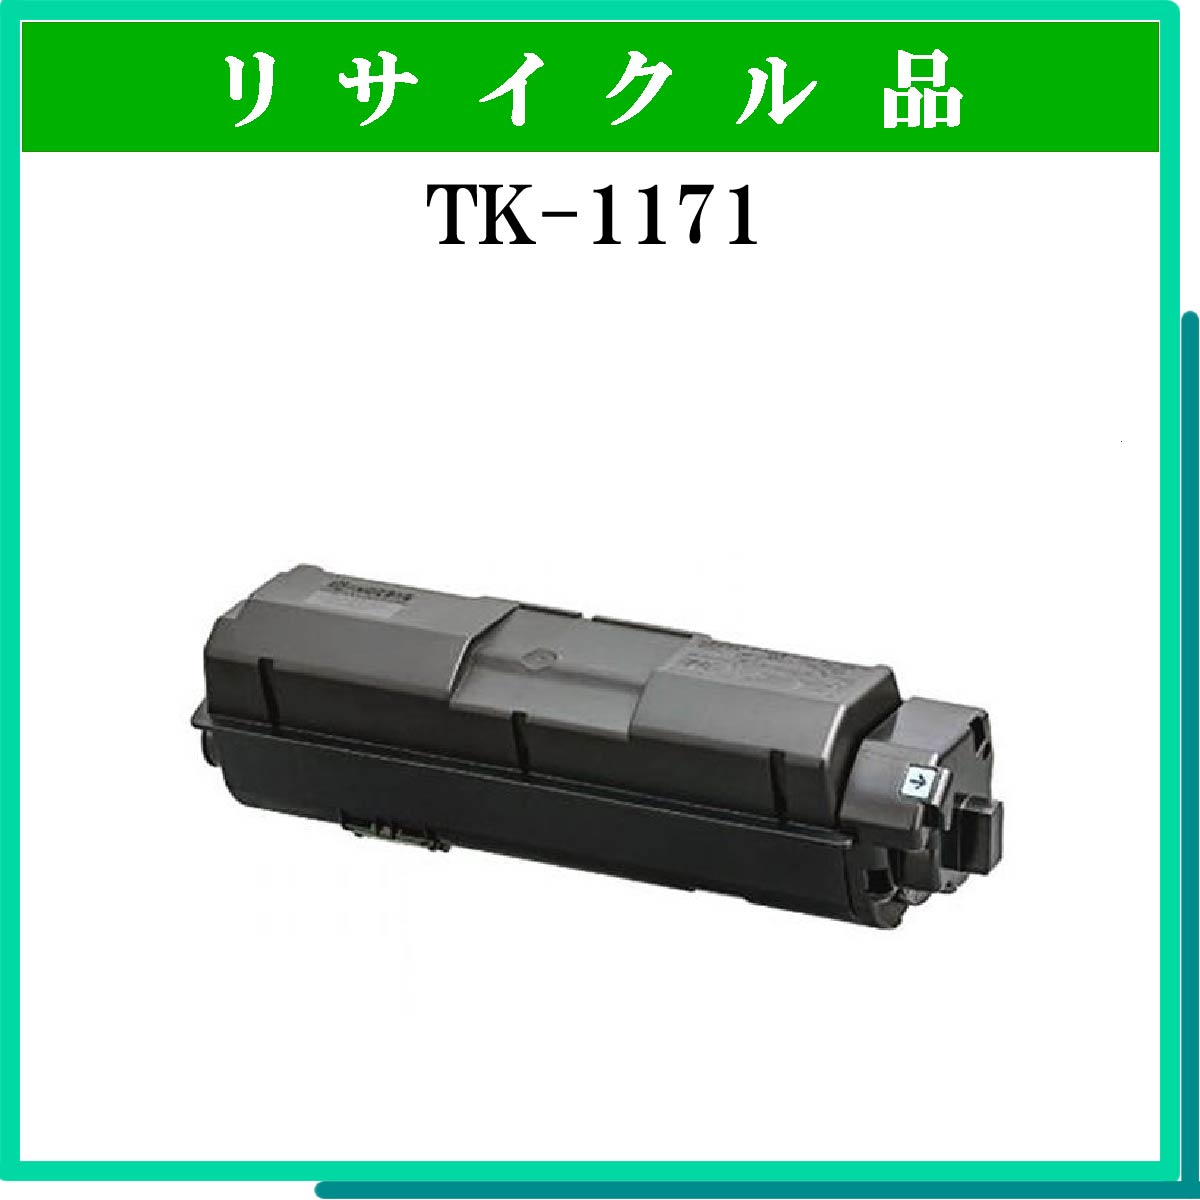 TK-1171